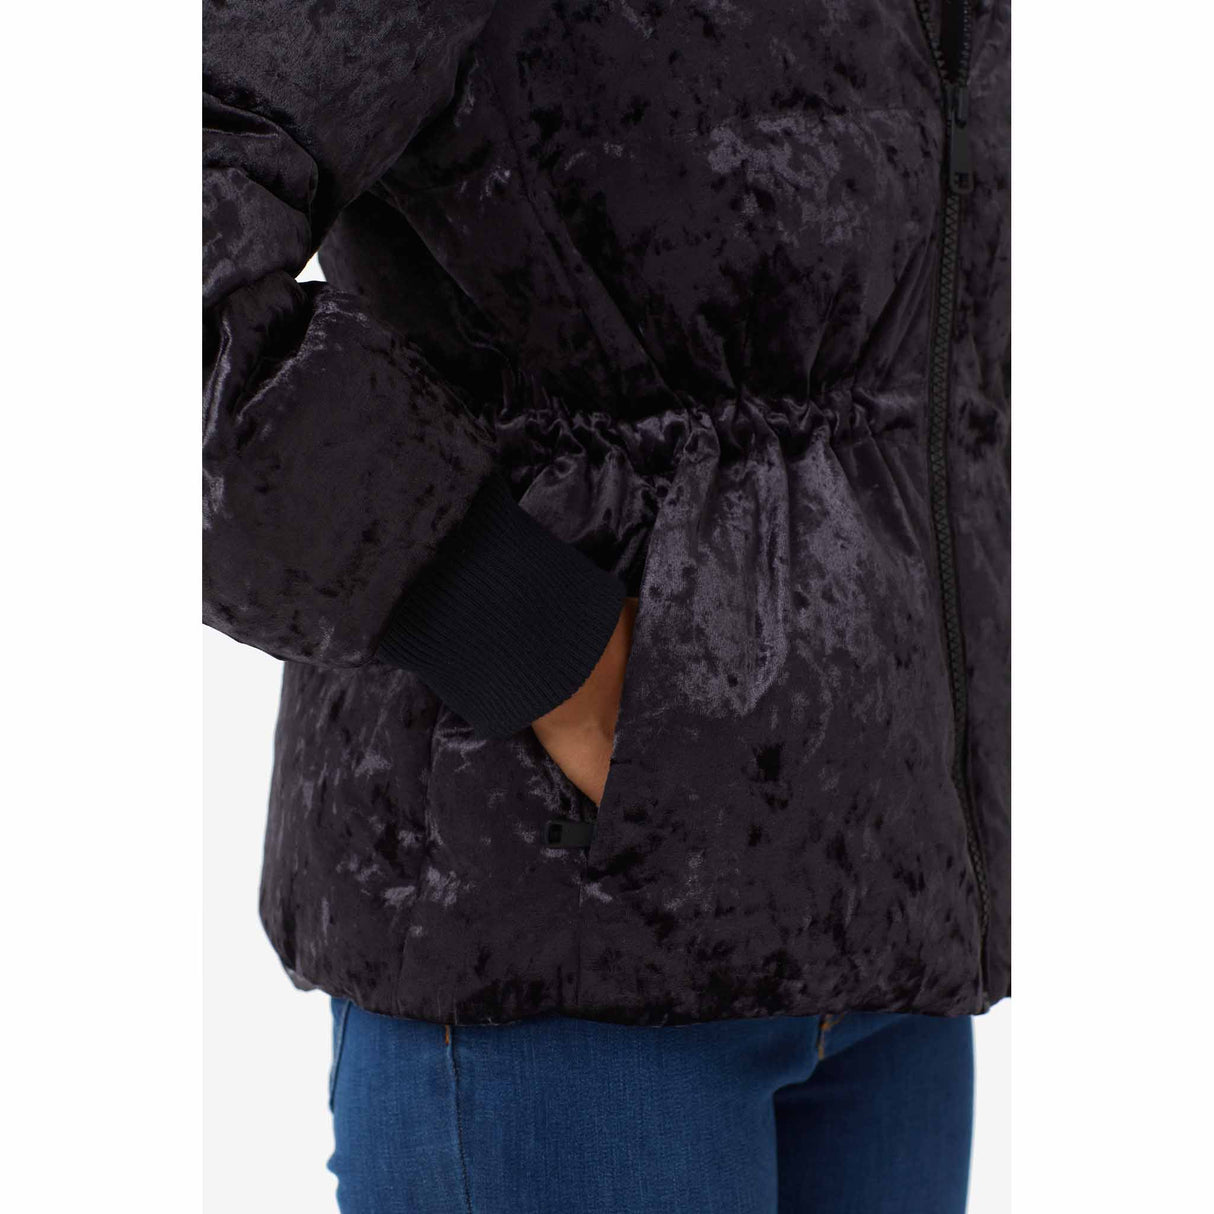 Lolë Kendall manteau d'hiver pour femme - Black Beauty